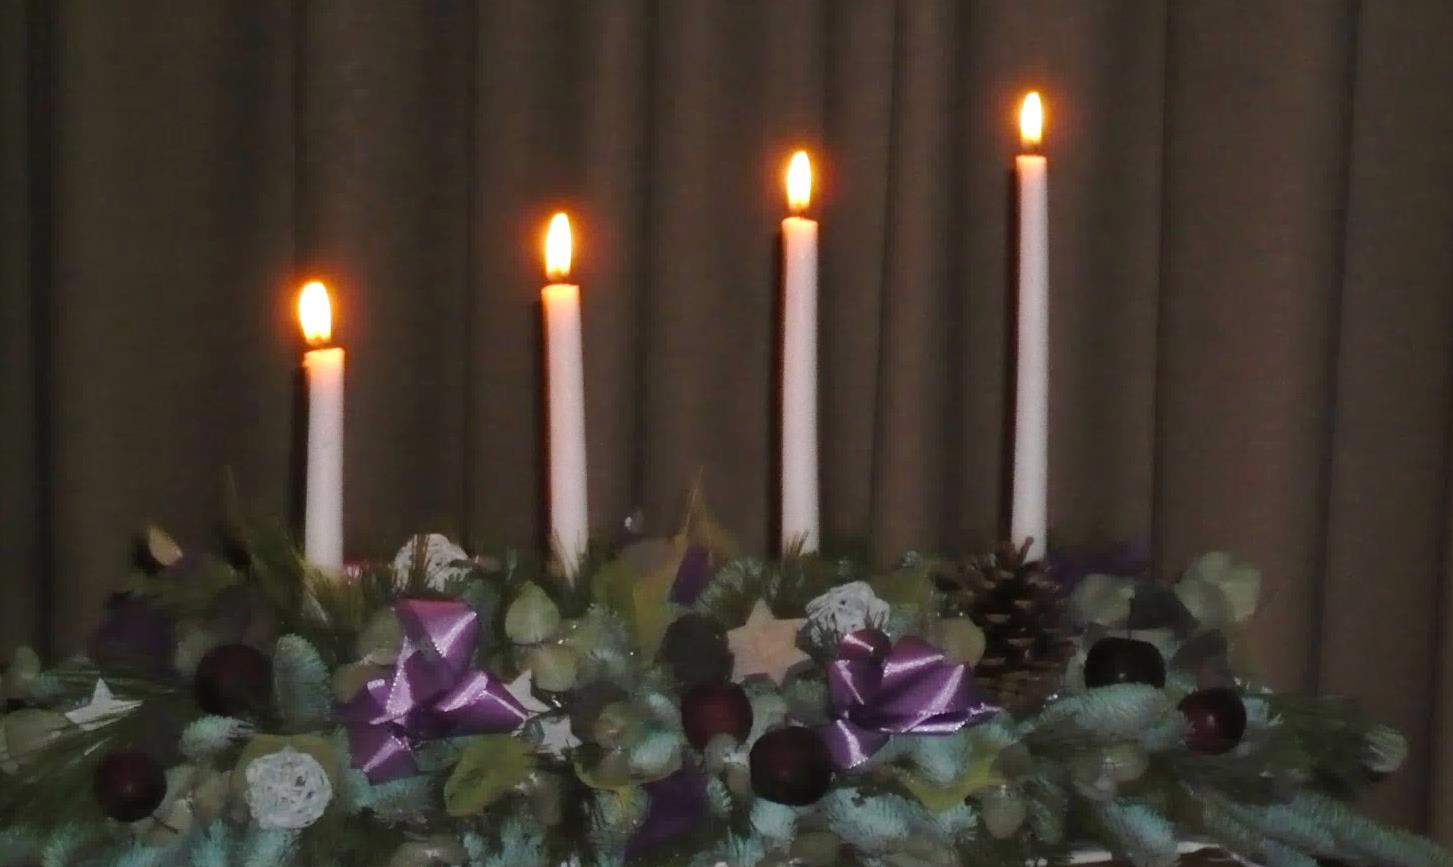 We Advent 2014 De kerk begint haar nieuw liturgisch jaar met een periode van verwachting, namelijk de Advent (adventus betekent komst ). Gelovigen verwachten de komst van de Heer Jezus.